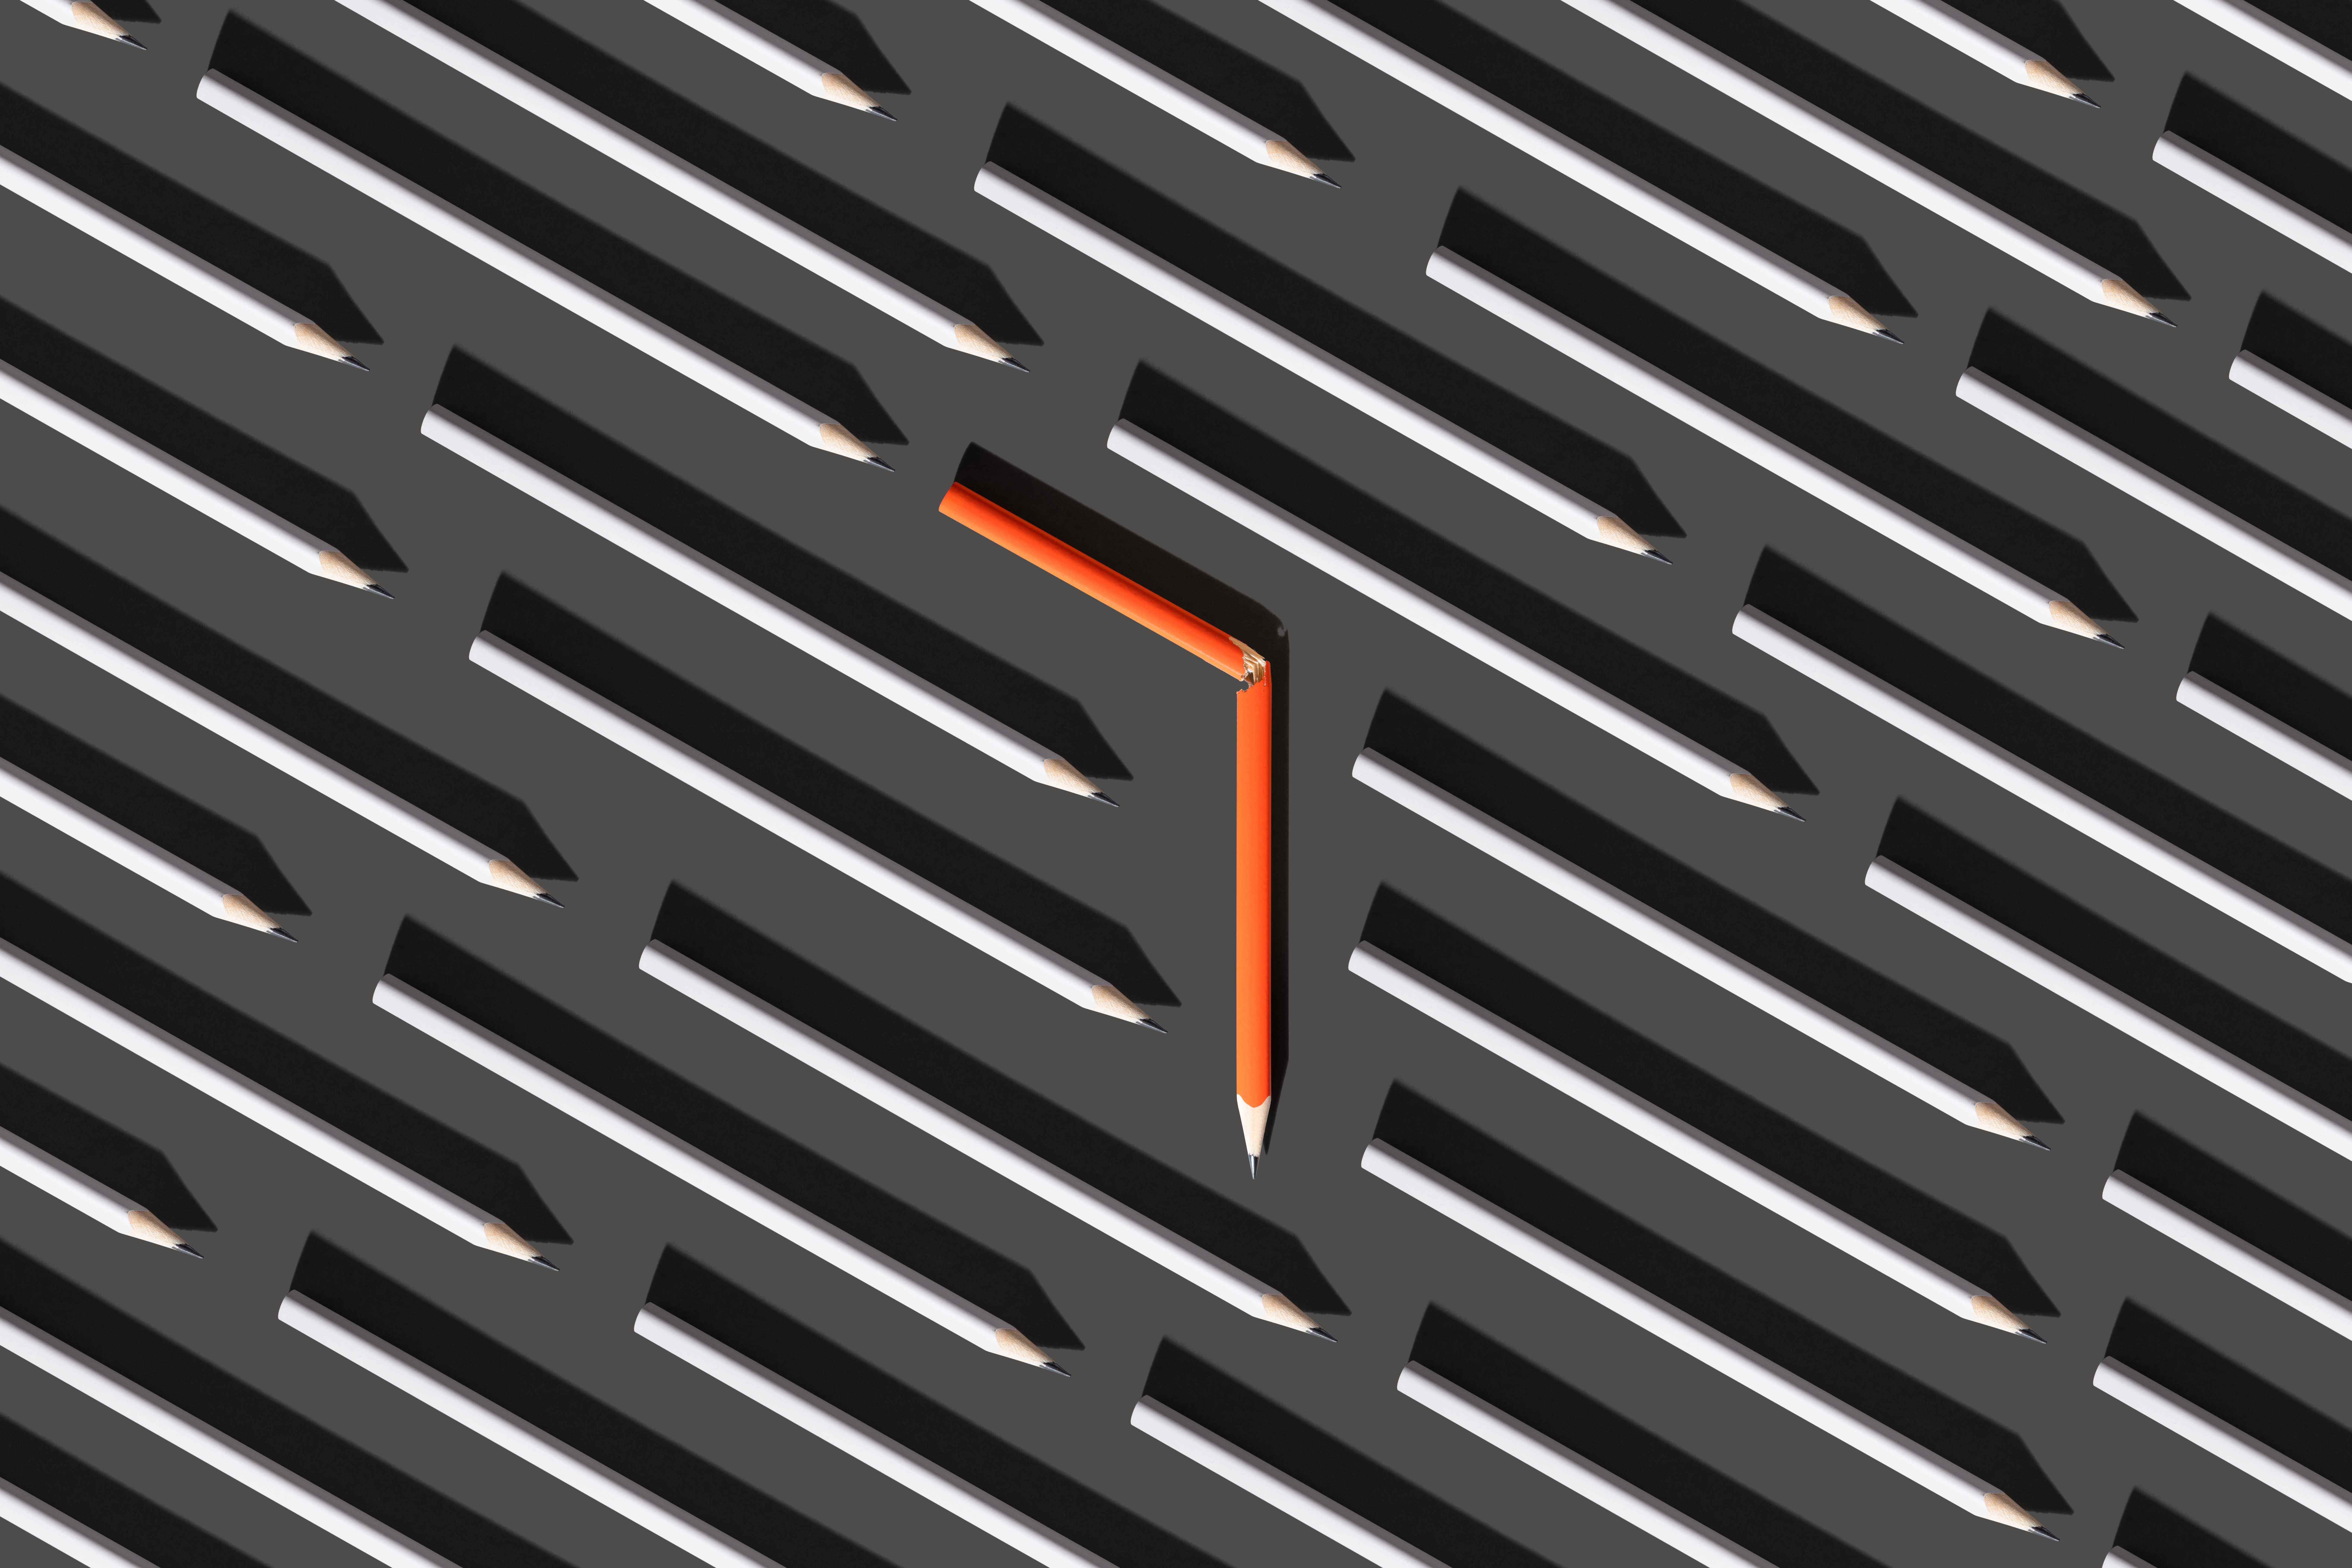 Dönmeyi temsil etmek için düz gri kalemler arasında turuncu kırık bir kalemin görüntüsü.